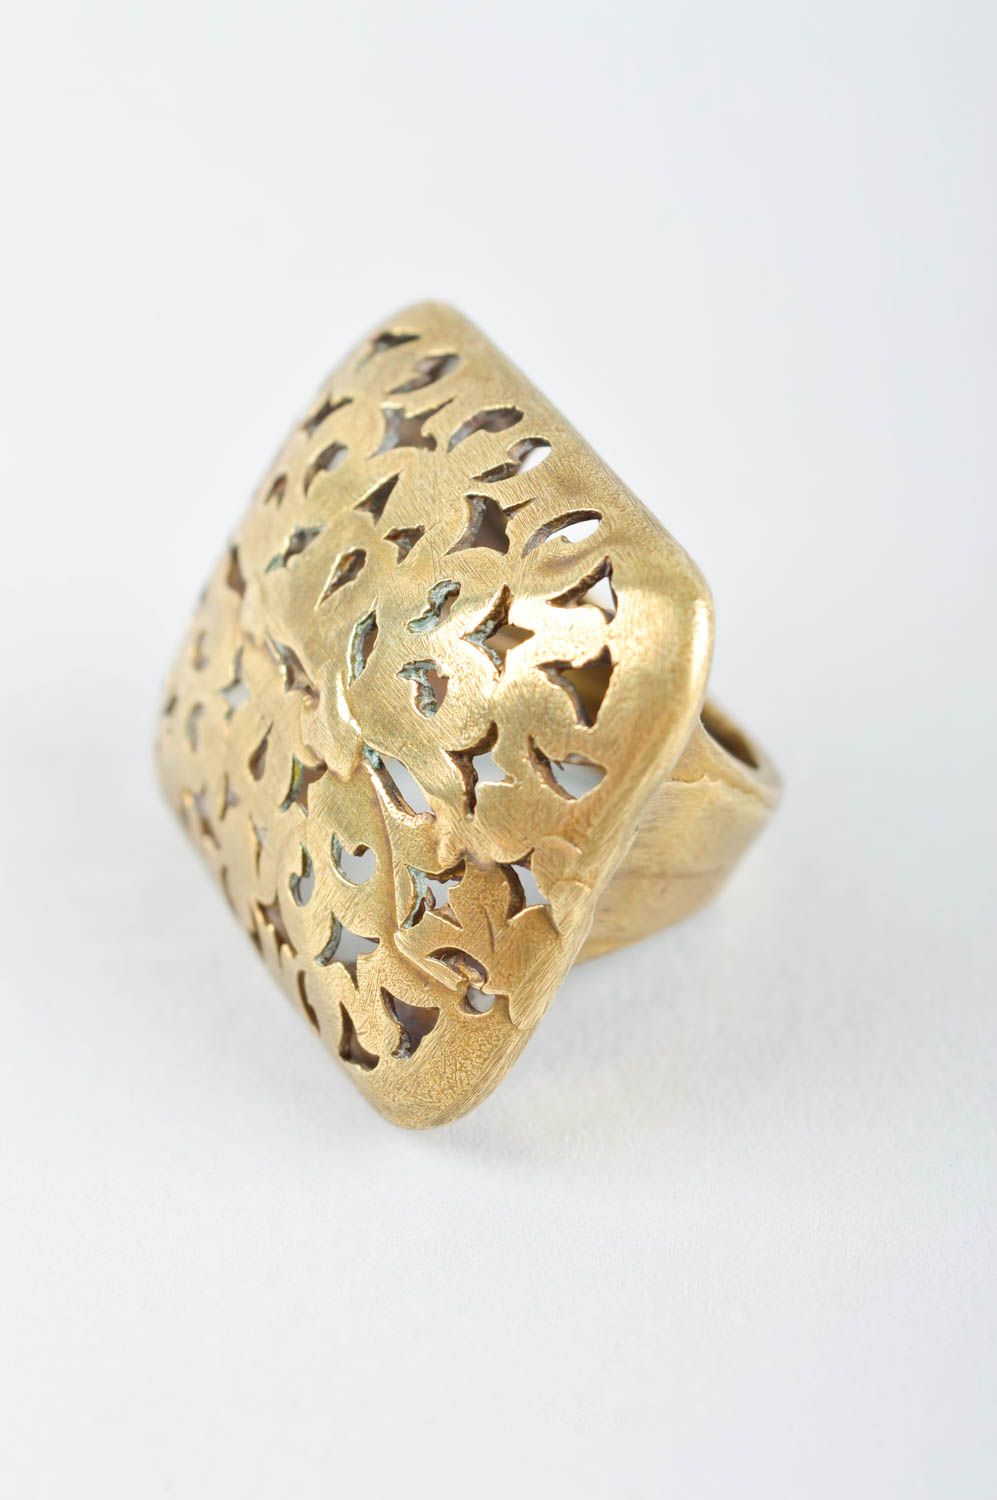 Украшение ручной работы женское кольцо украшение из металла с резными узорами фото 2